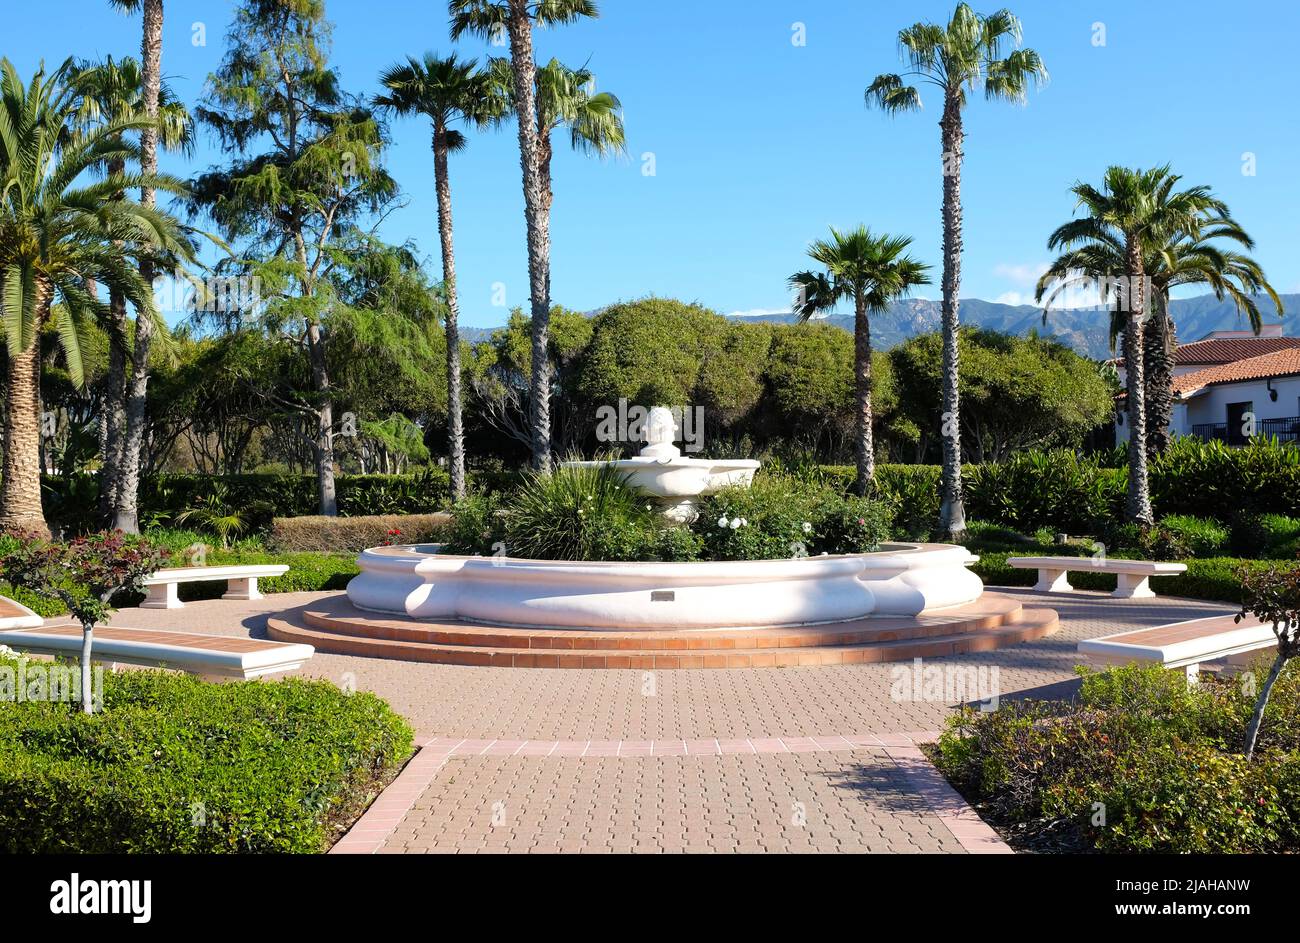 SANTA BARBARA, CALIFORNIE - 12 AVRIL 2019 : cour du Hilton Santa Barbara Beachfront Resort, situé à quelques minutes du centre-ville avec une vue imprenable Banque D'Images